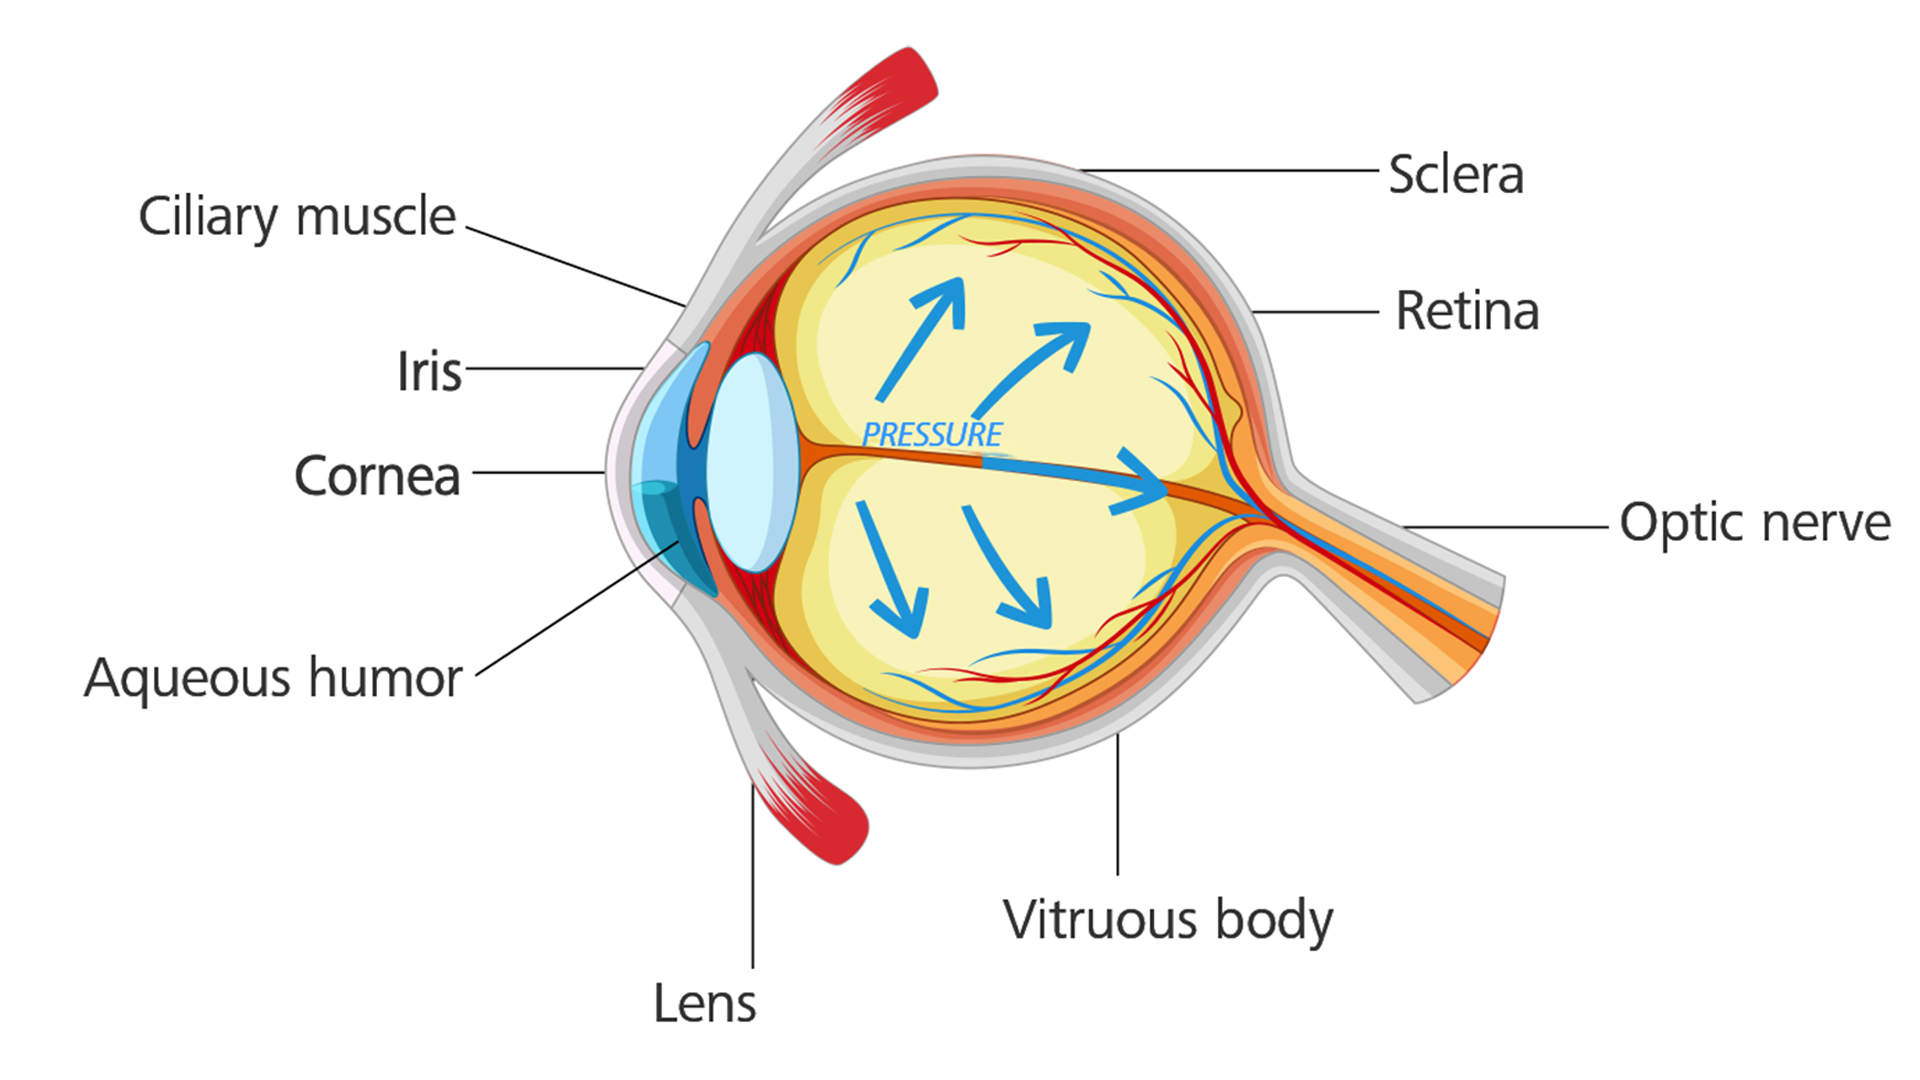 Oog met glaucoom: Oogdruk bouwt op en beschadigt de oogzenuw.